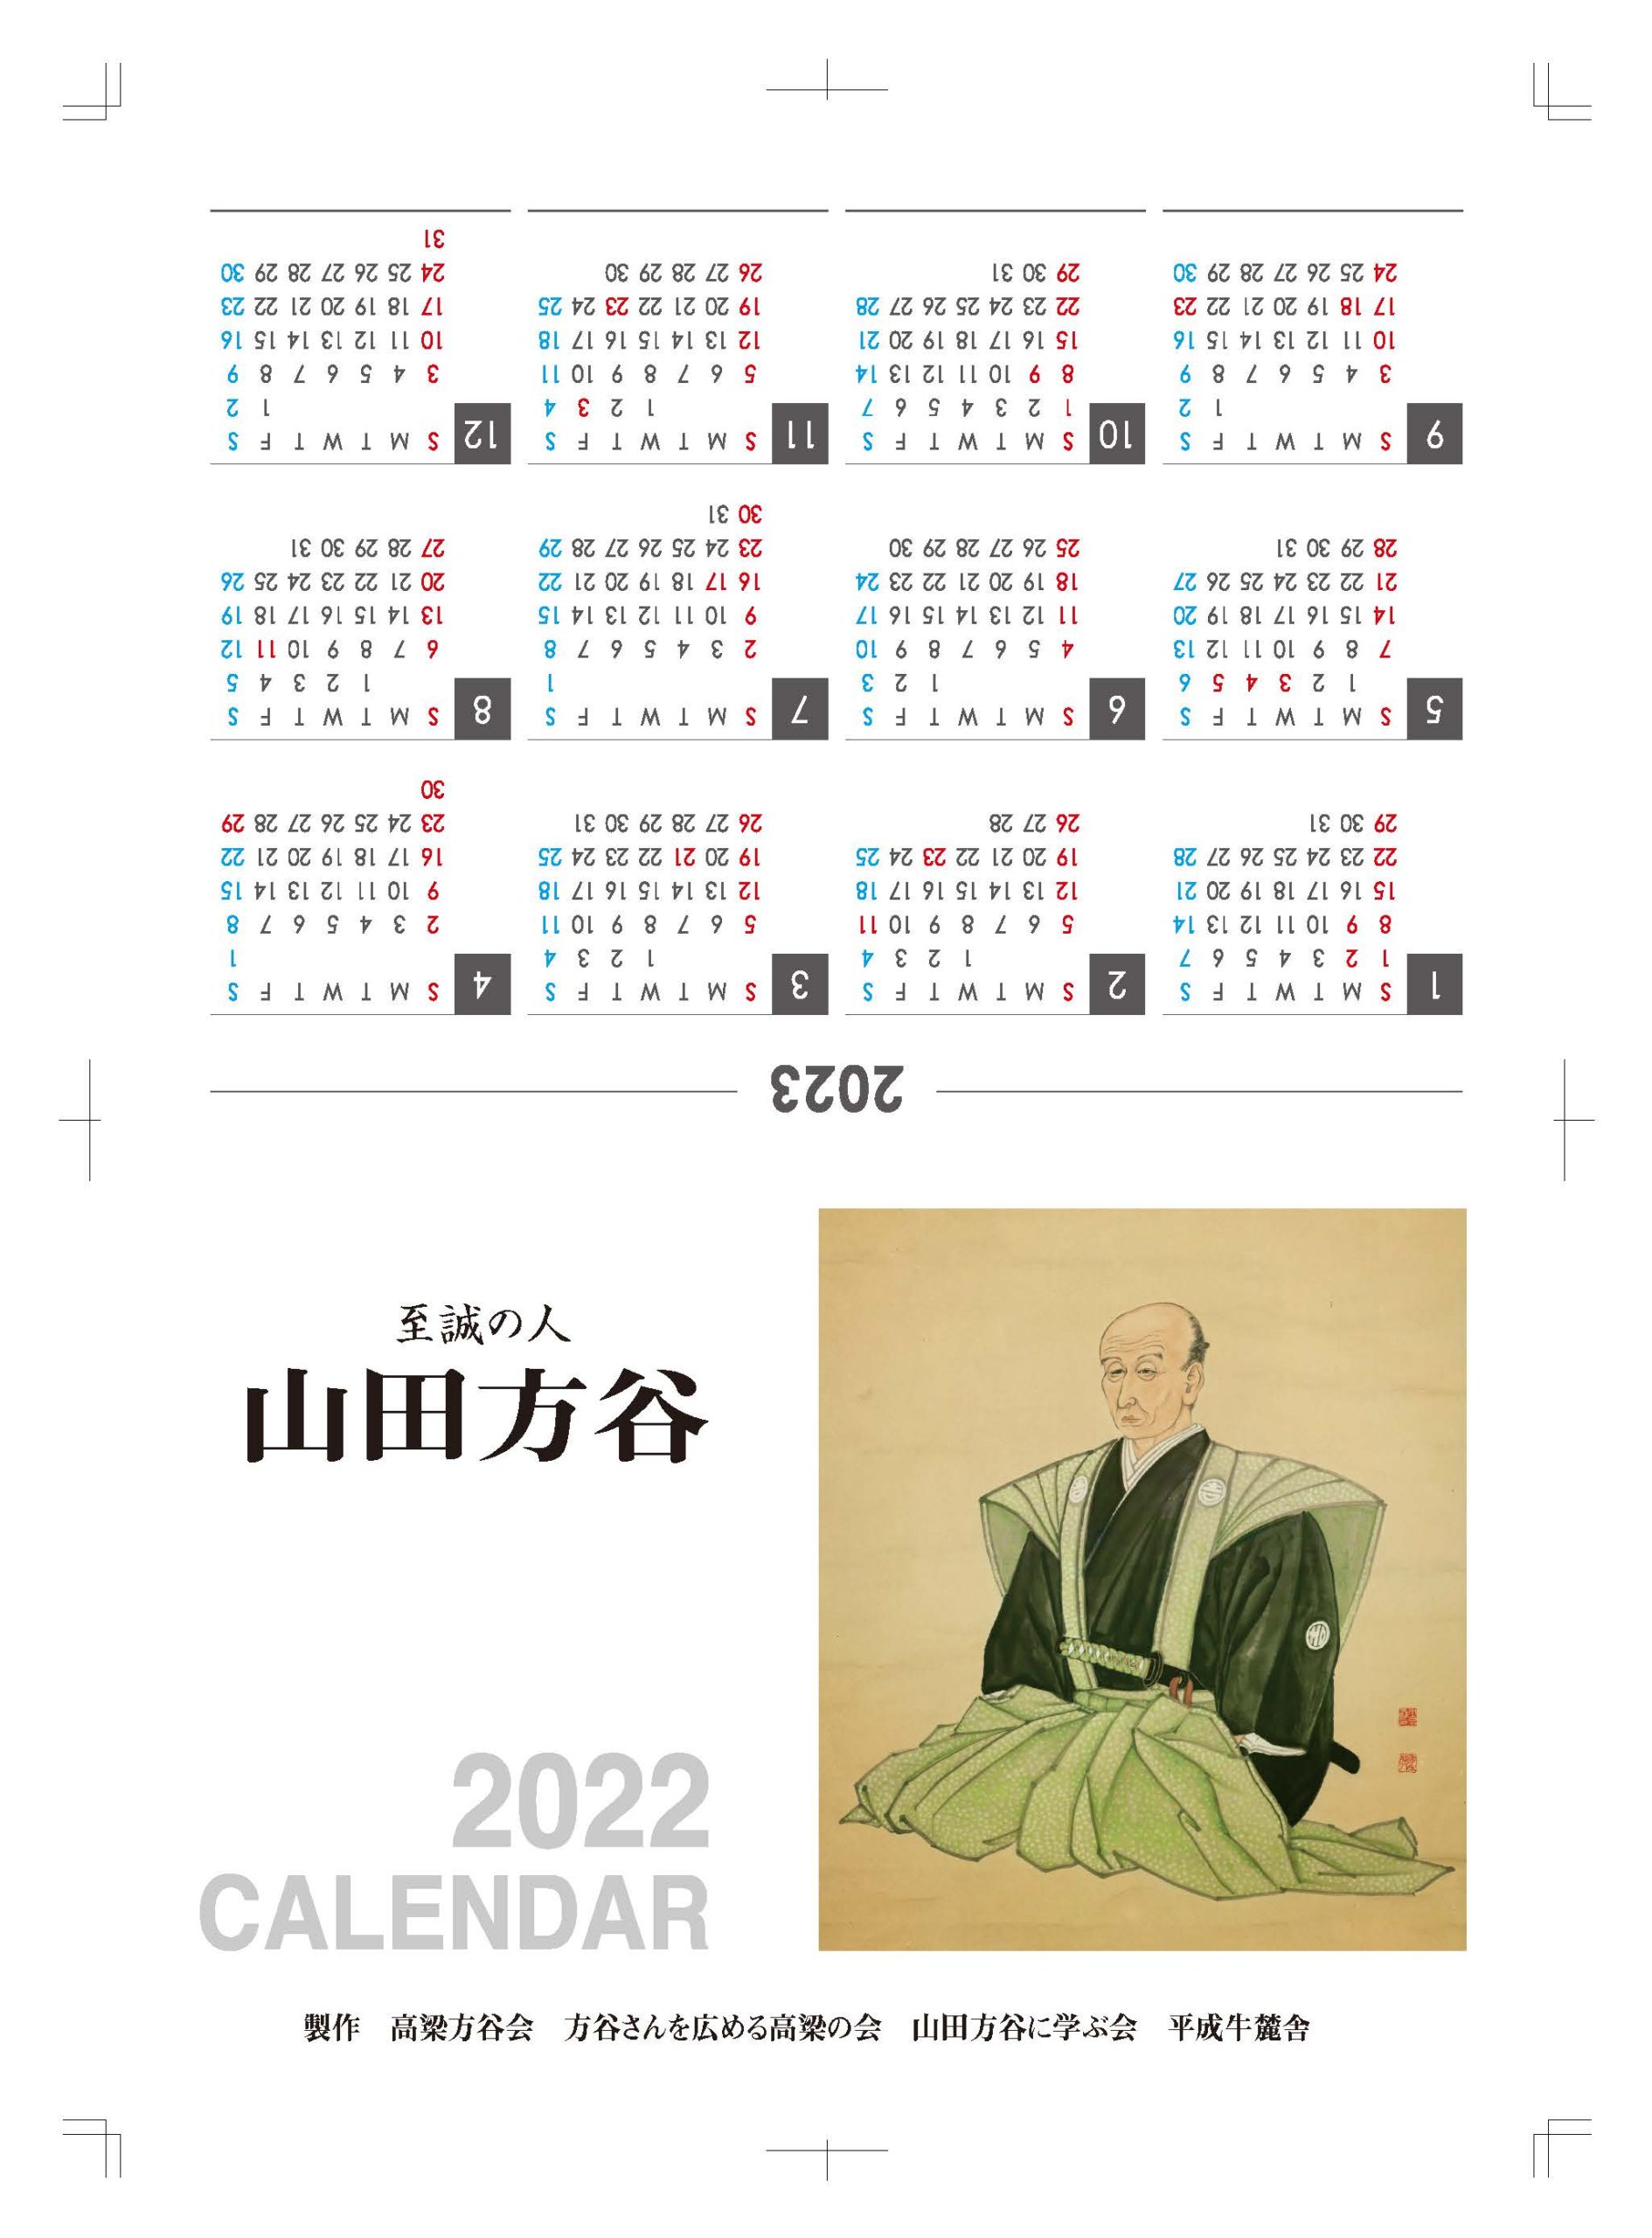 山田方谷カレンダー2022年が発行されました